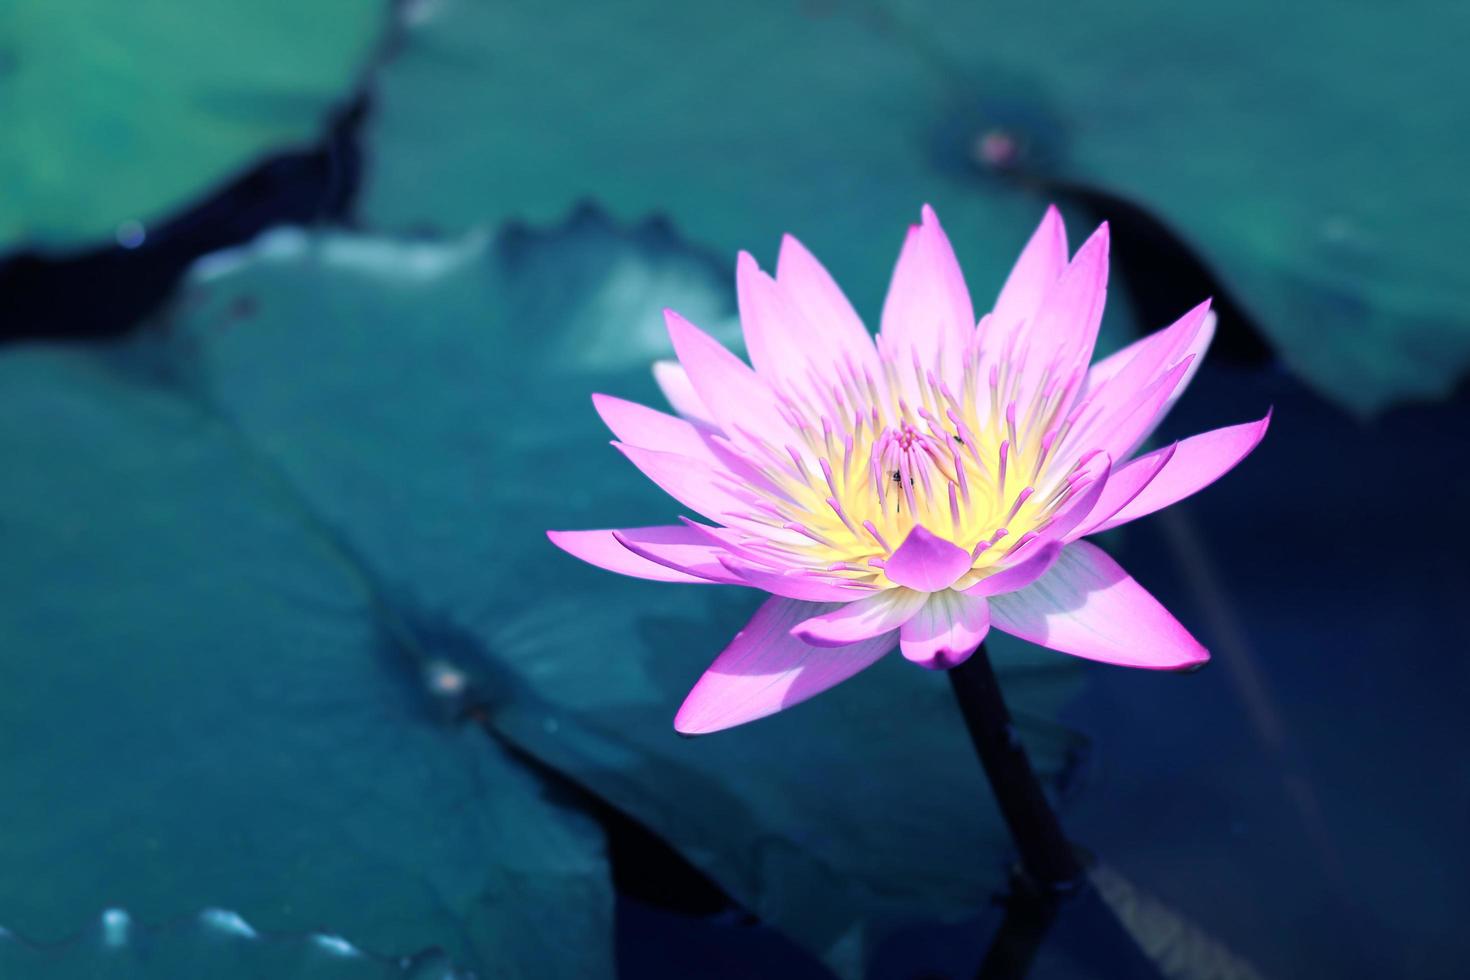 hermosa flor de loto rosa en el estanque, símbolo de la flor de loto del  budismo y las creencias budistas. 8920697 Foto de stock en Vecteezy